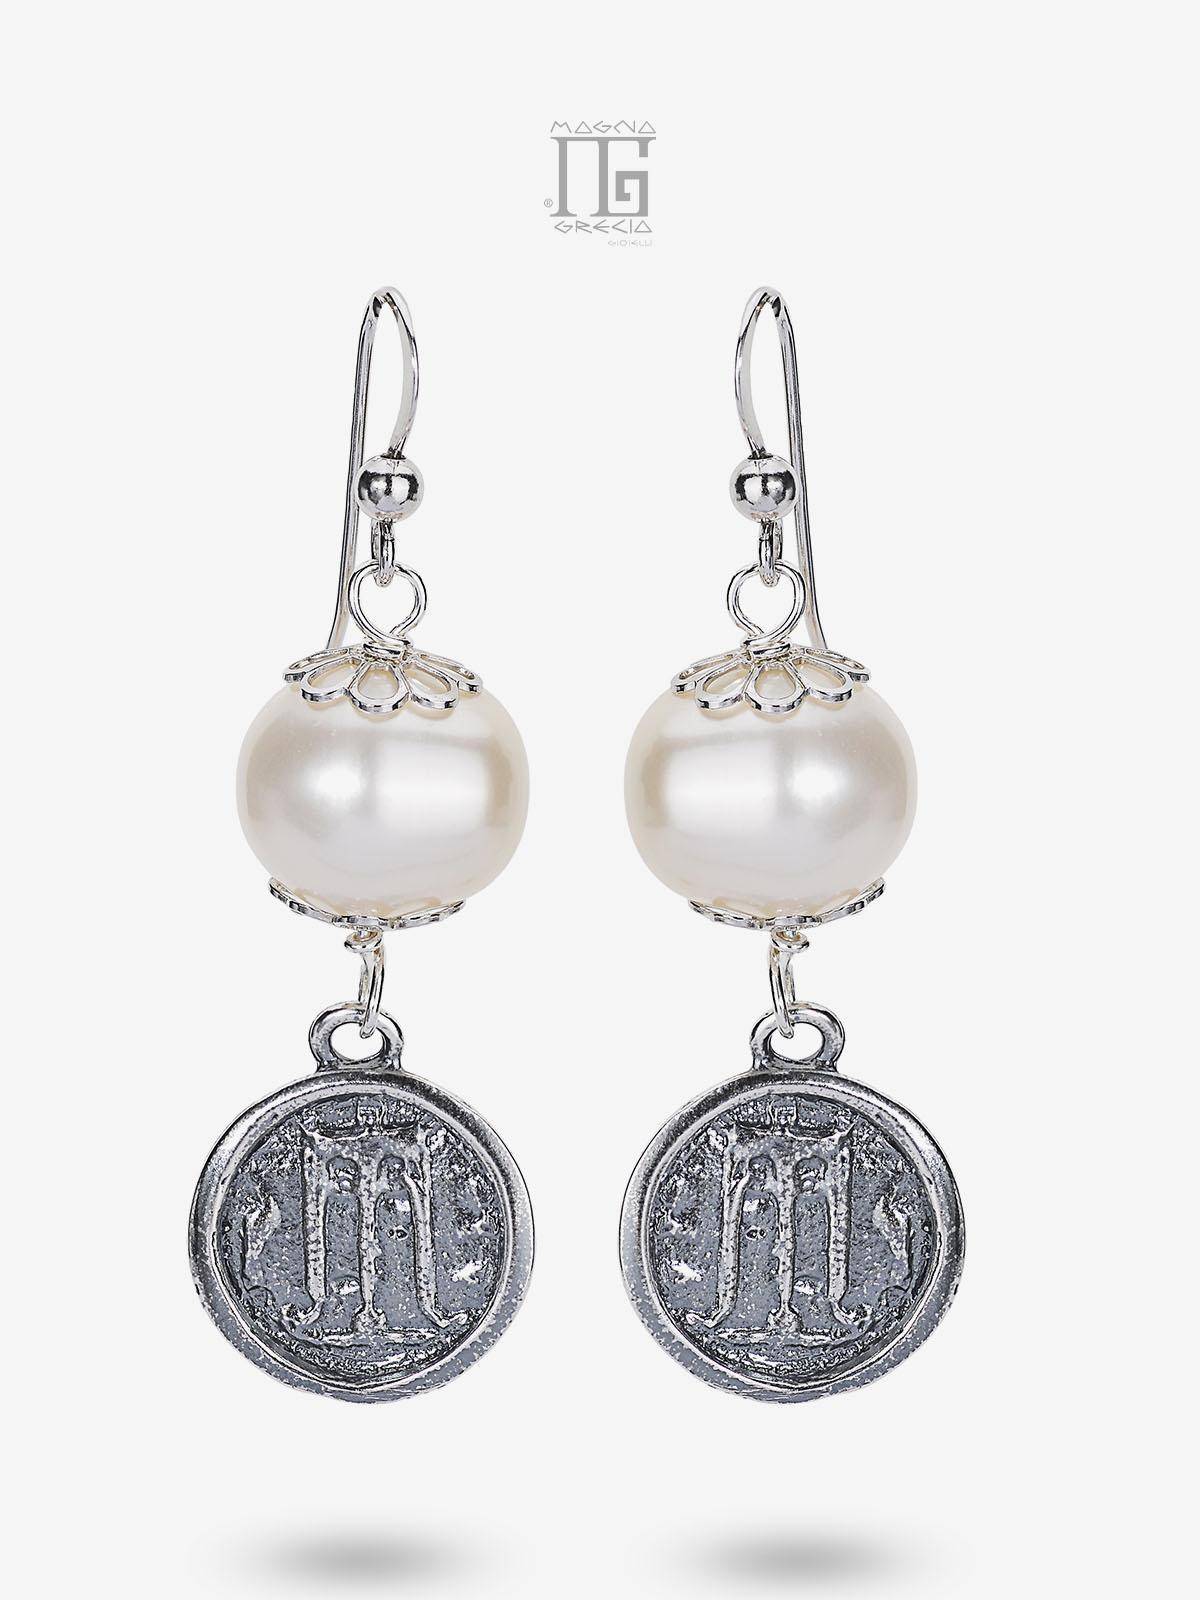 Pendientes de plata con estater y perlas naturales de agua dulce Cod. MGK 4025 V